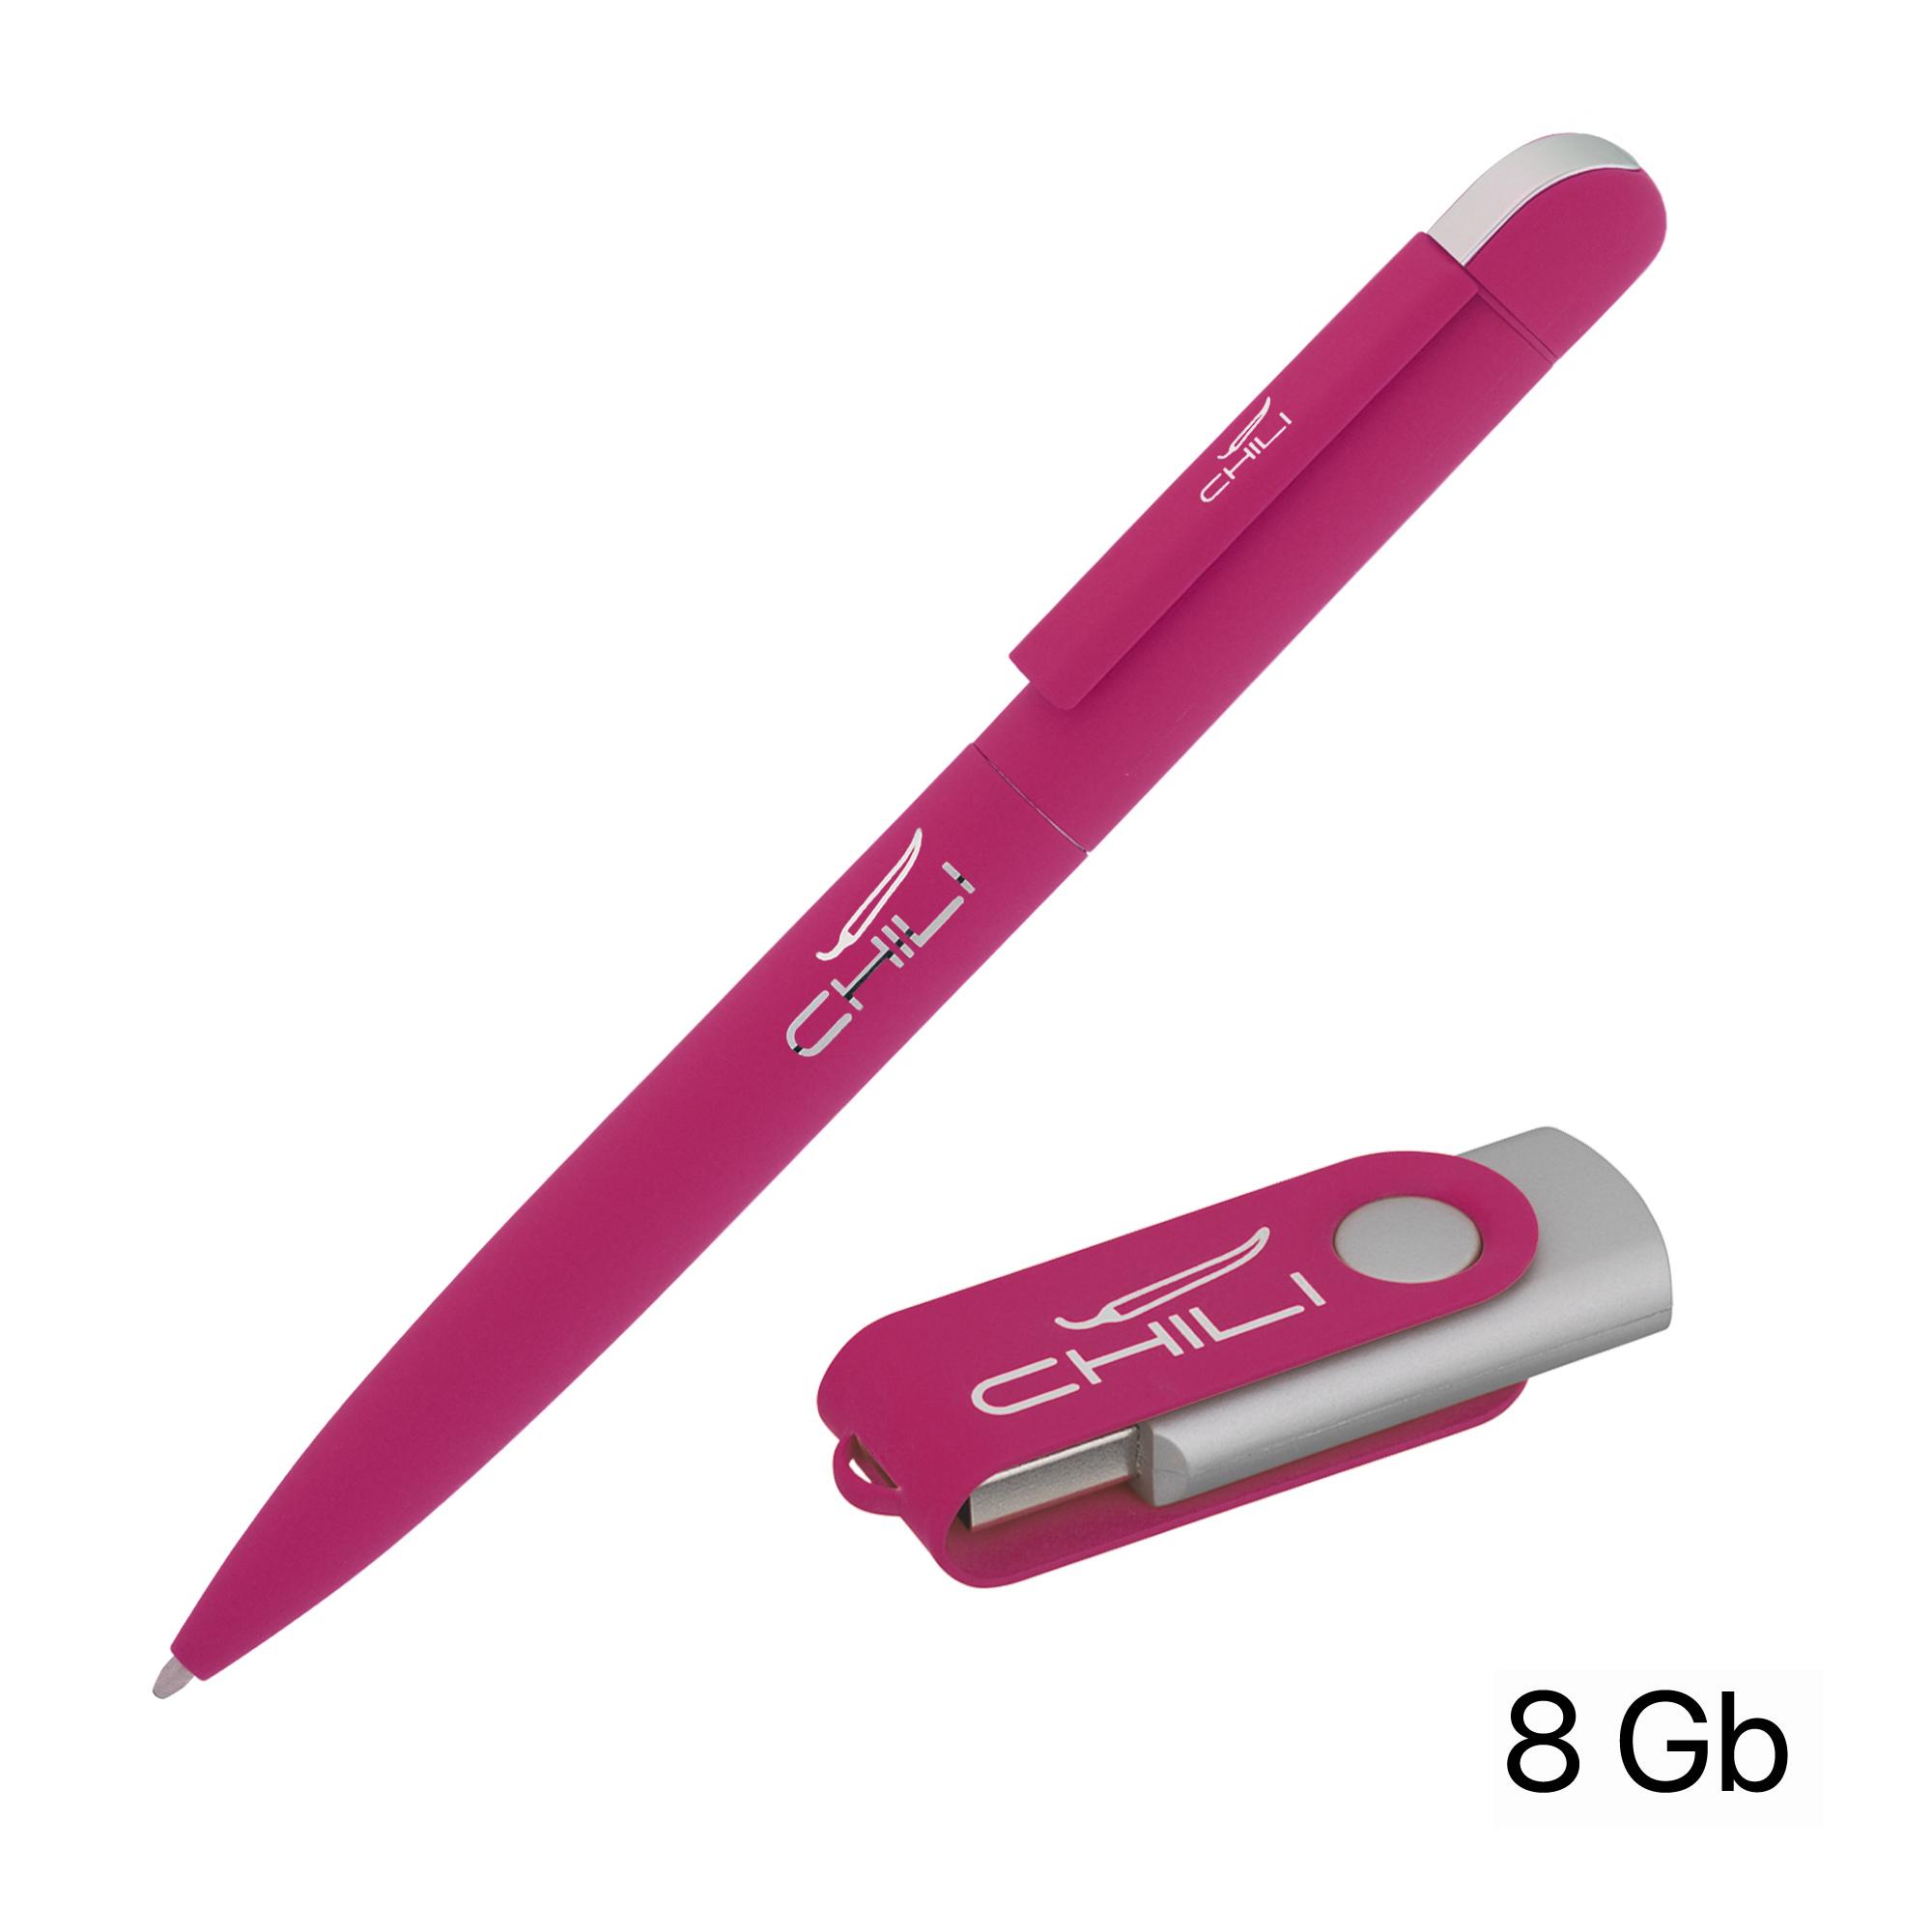 Набор ручка + флеш-карта 8 Гб в футляре, покрытие soft touch, цвет фуксия, фото 1